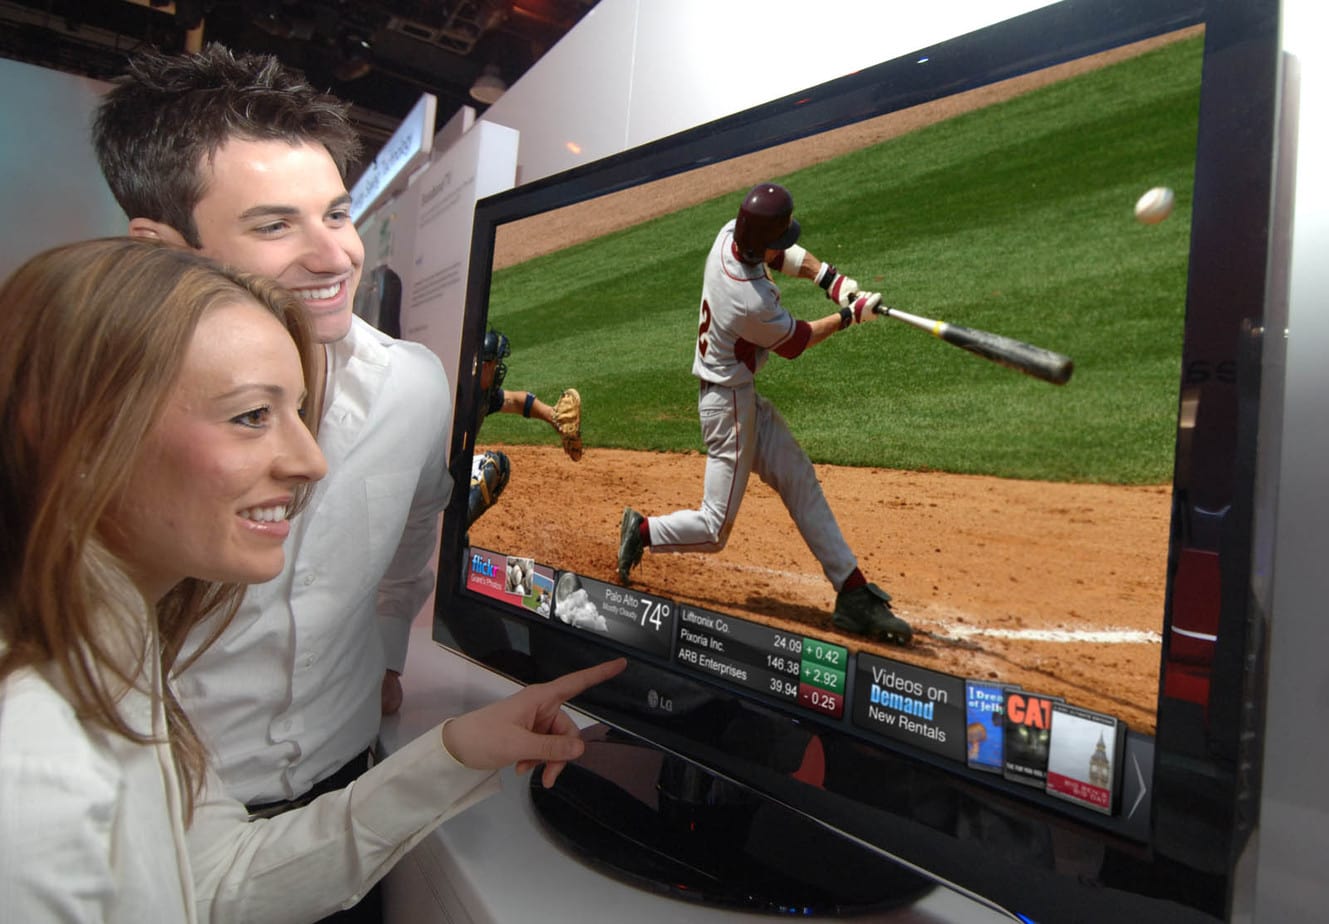 Poczuć się jak na stadionie. Jakie możliwości dają nowoczesne telewizory do oglądania sportu?